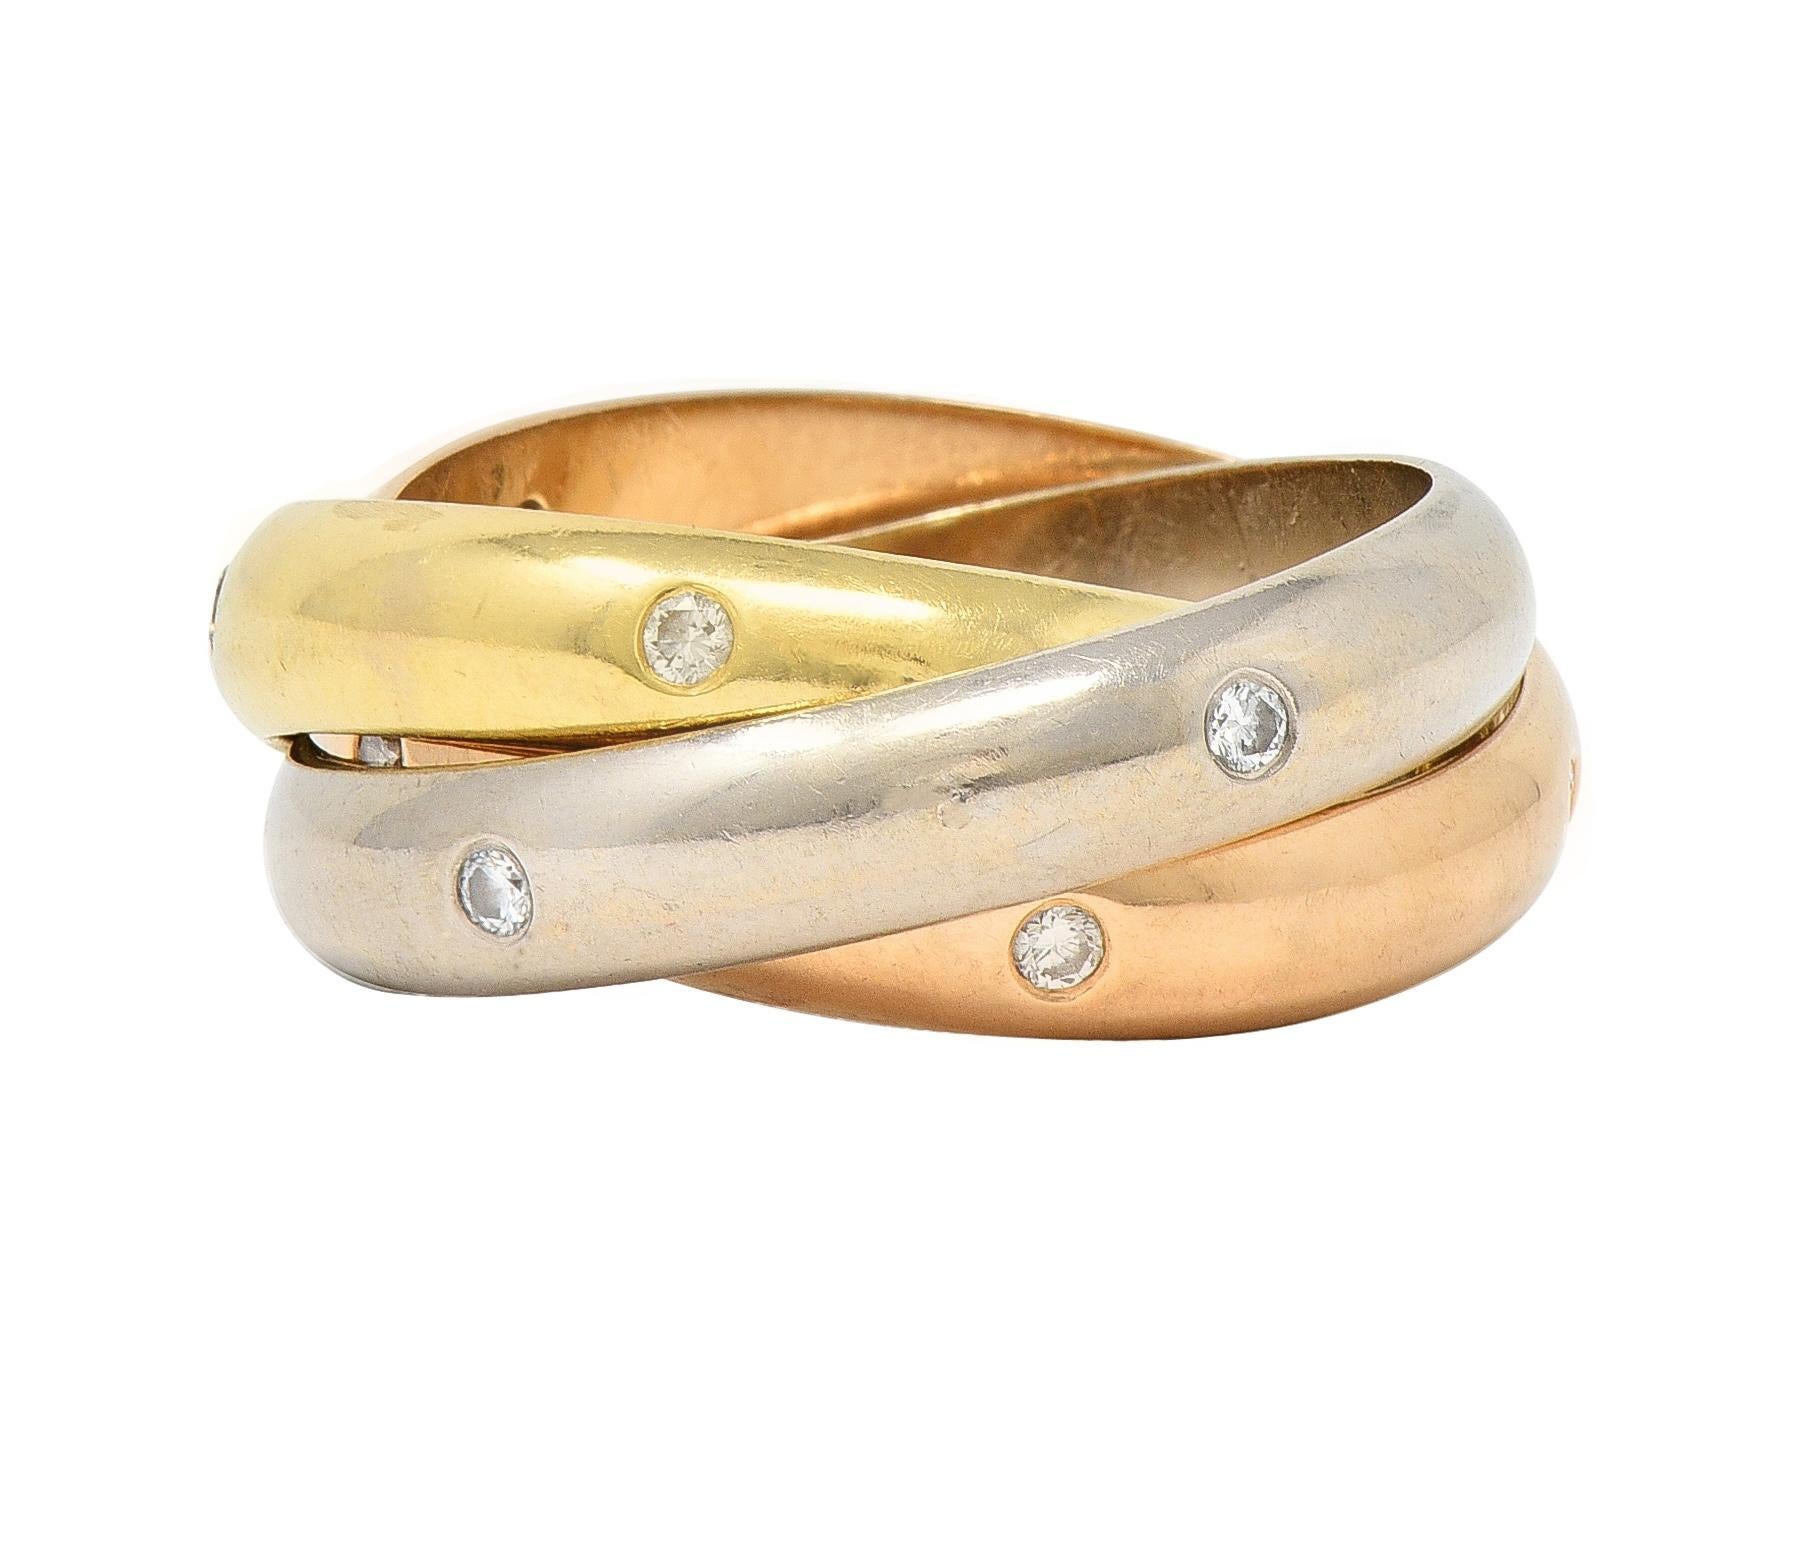 Der Ring besteht aus drei ineinander greifenden Bändern aus Rosé-, Weiß- und Gelbgold
Durchgehend mit runden Diamanten im Brillantschliff besetzt 
Mit einem Gesamtgewicht von etwa 0.38 Karat - Farbe G mit Reinheit VS
Mit durchgehend